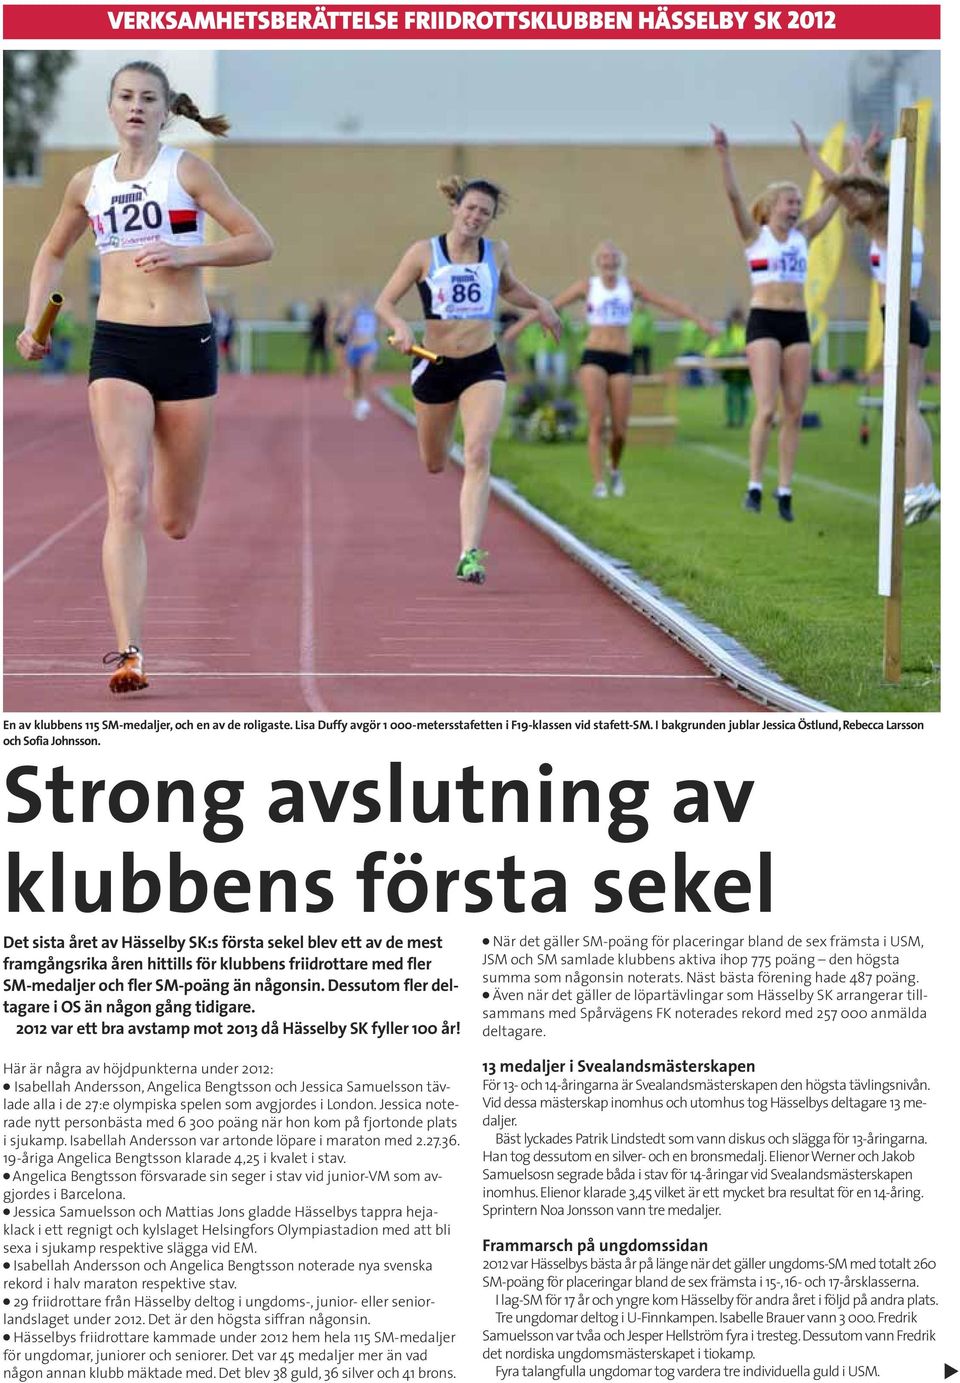 Strong avslutning av klubbens första sekel Det sista året av Hässelby SK:s första sekel blev ett av de mest framgångsrika åren hittills för klubbens friidrottare med fler SM-medaljer och fler